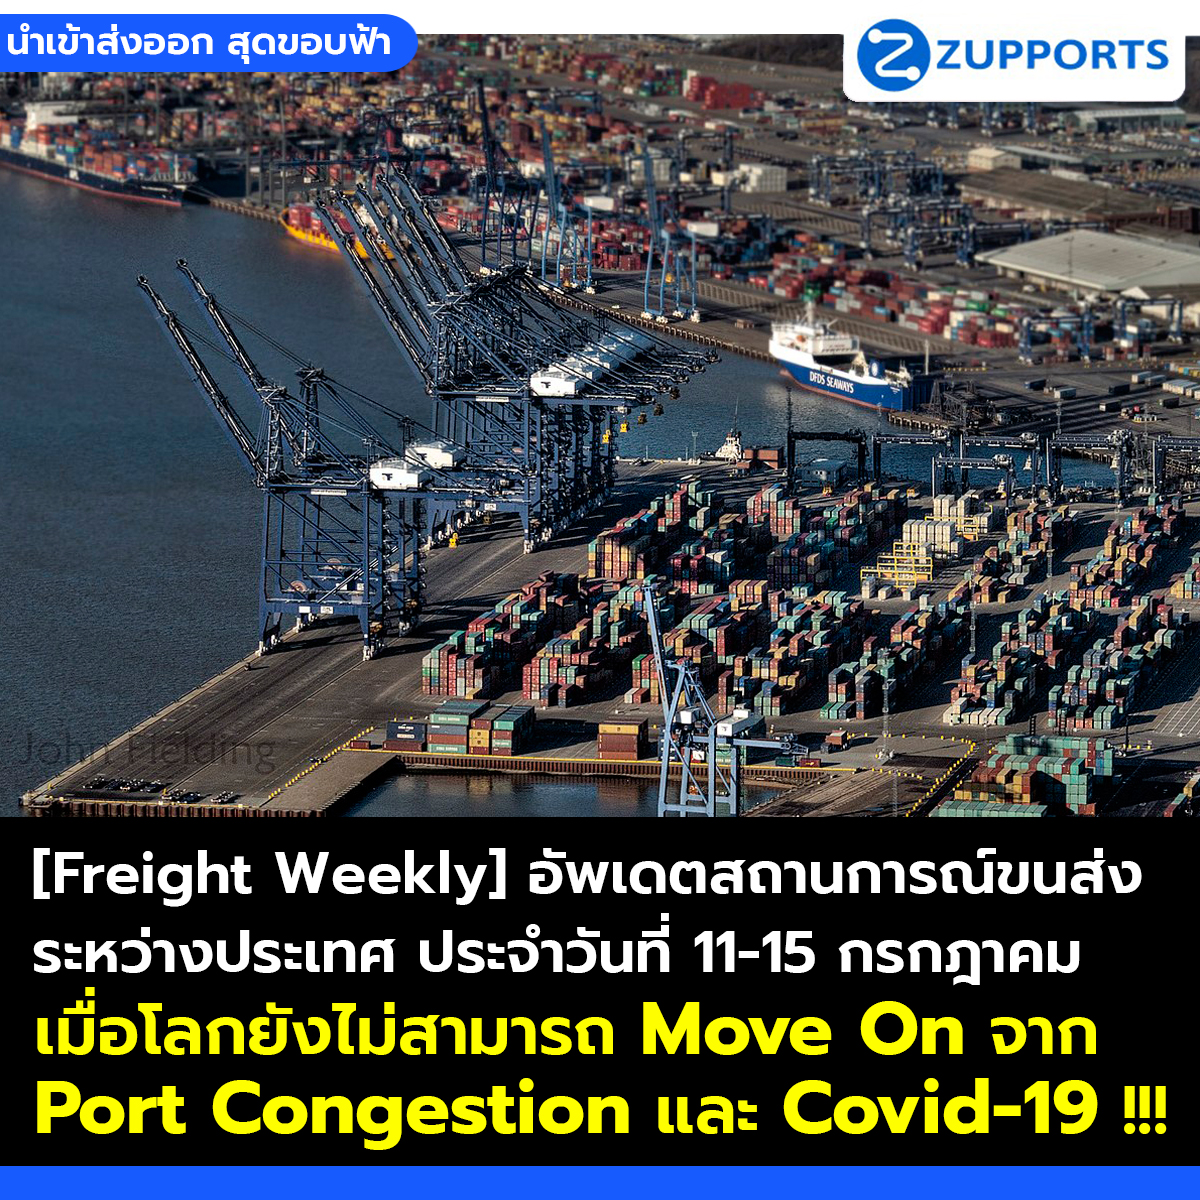 [Freight Weekly] อัพเดตสถานการณ์ขนส่งระหว่างประเทศ ประจำวันที่  11-15 กรกฎาคม 2565 กับ ZUPPORTS เมื่อโลกยังไม่สามารถ Move On จาก Port Congestion และ Covid-19 !!!